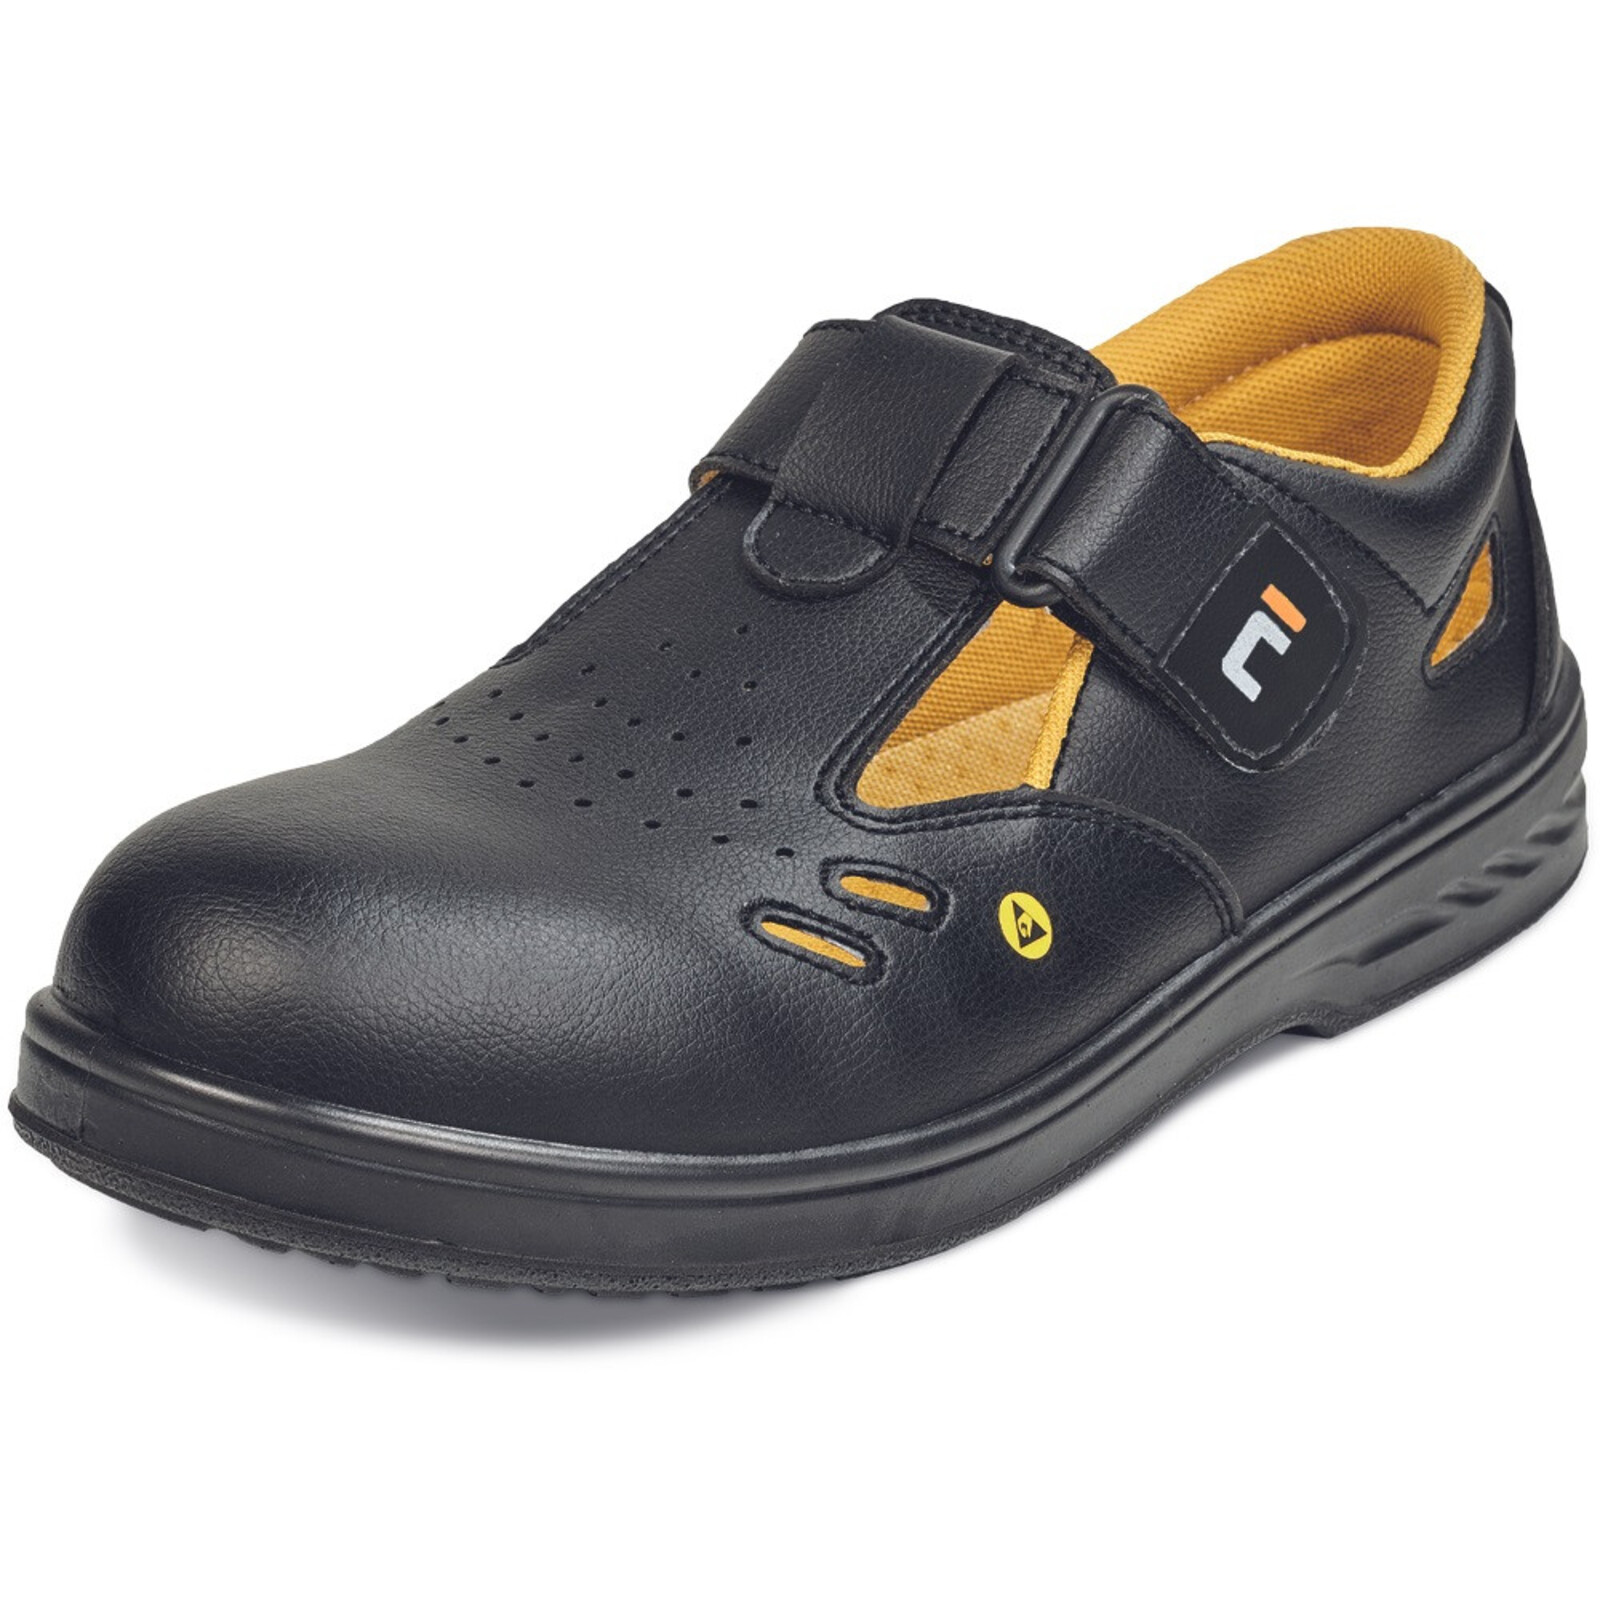 Bezpečnostné sandále Raven MF ESD S1 SRC - veľkosť: 44, farba: čierna